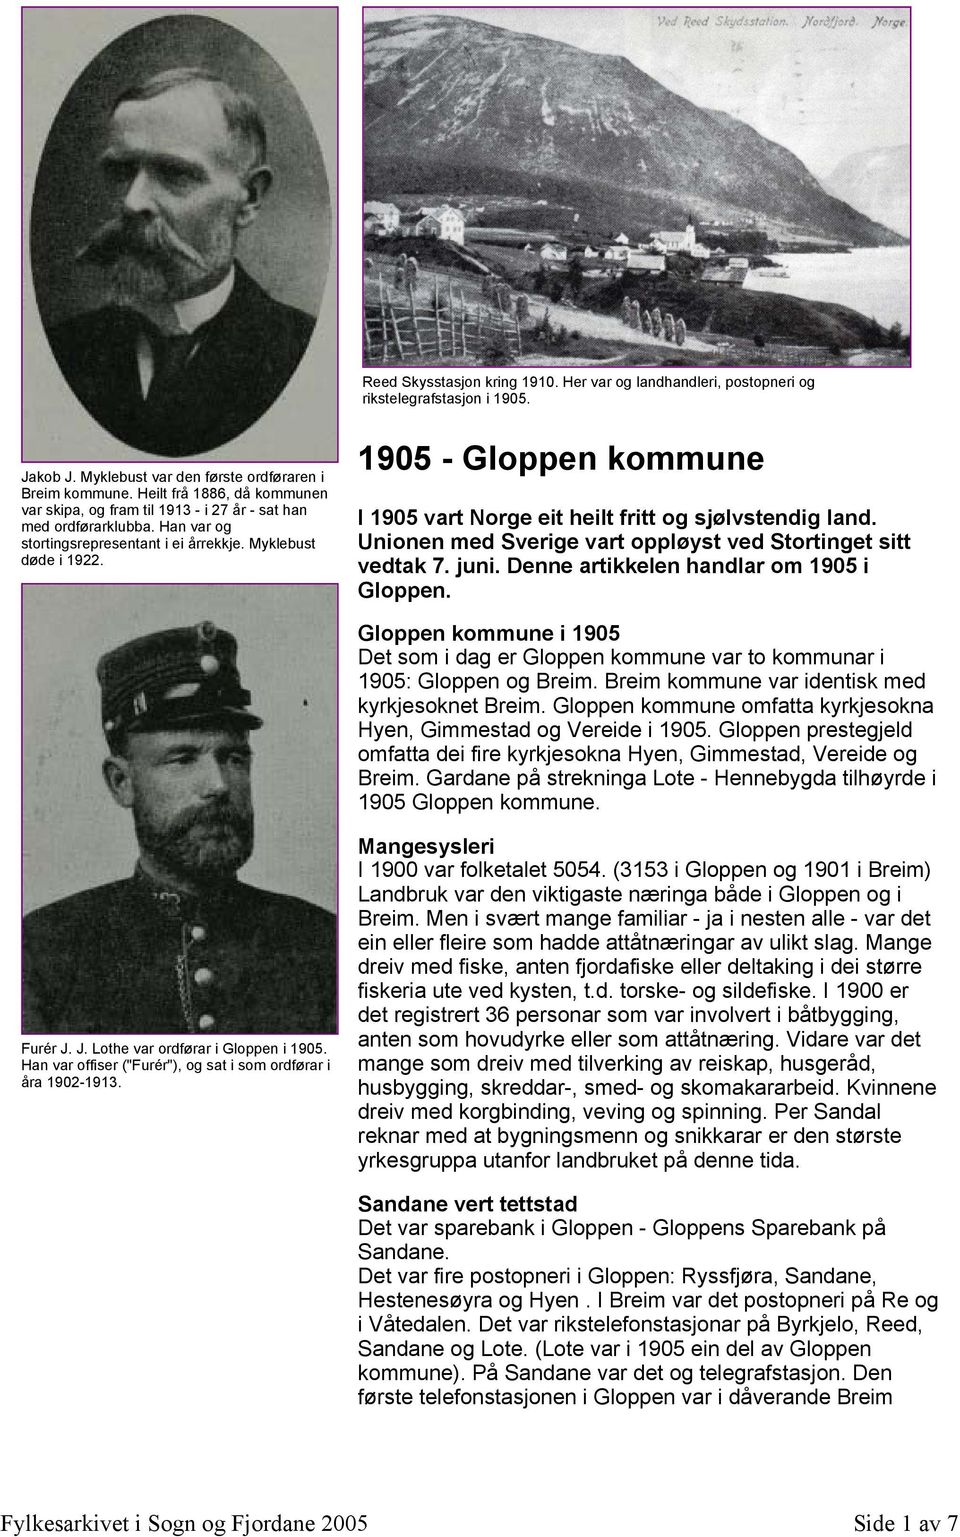 1905 - Gloppen kommune I 1905 vart Norge eit heilt fritt og sjølvstendig land. Unionen med Sverige vart oppløyst ved Stortinget sitt vedtak 7. juni. Denne artikkelen handlar om 1905 i Gloppen.